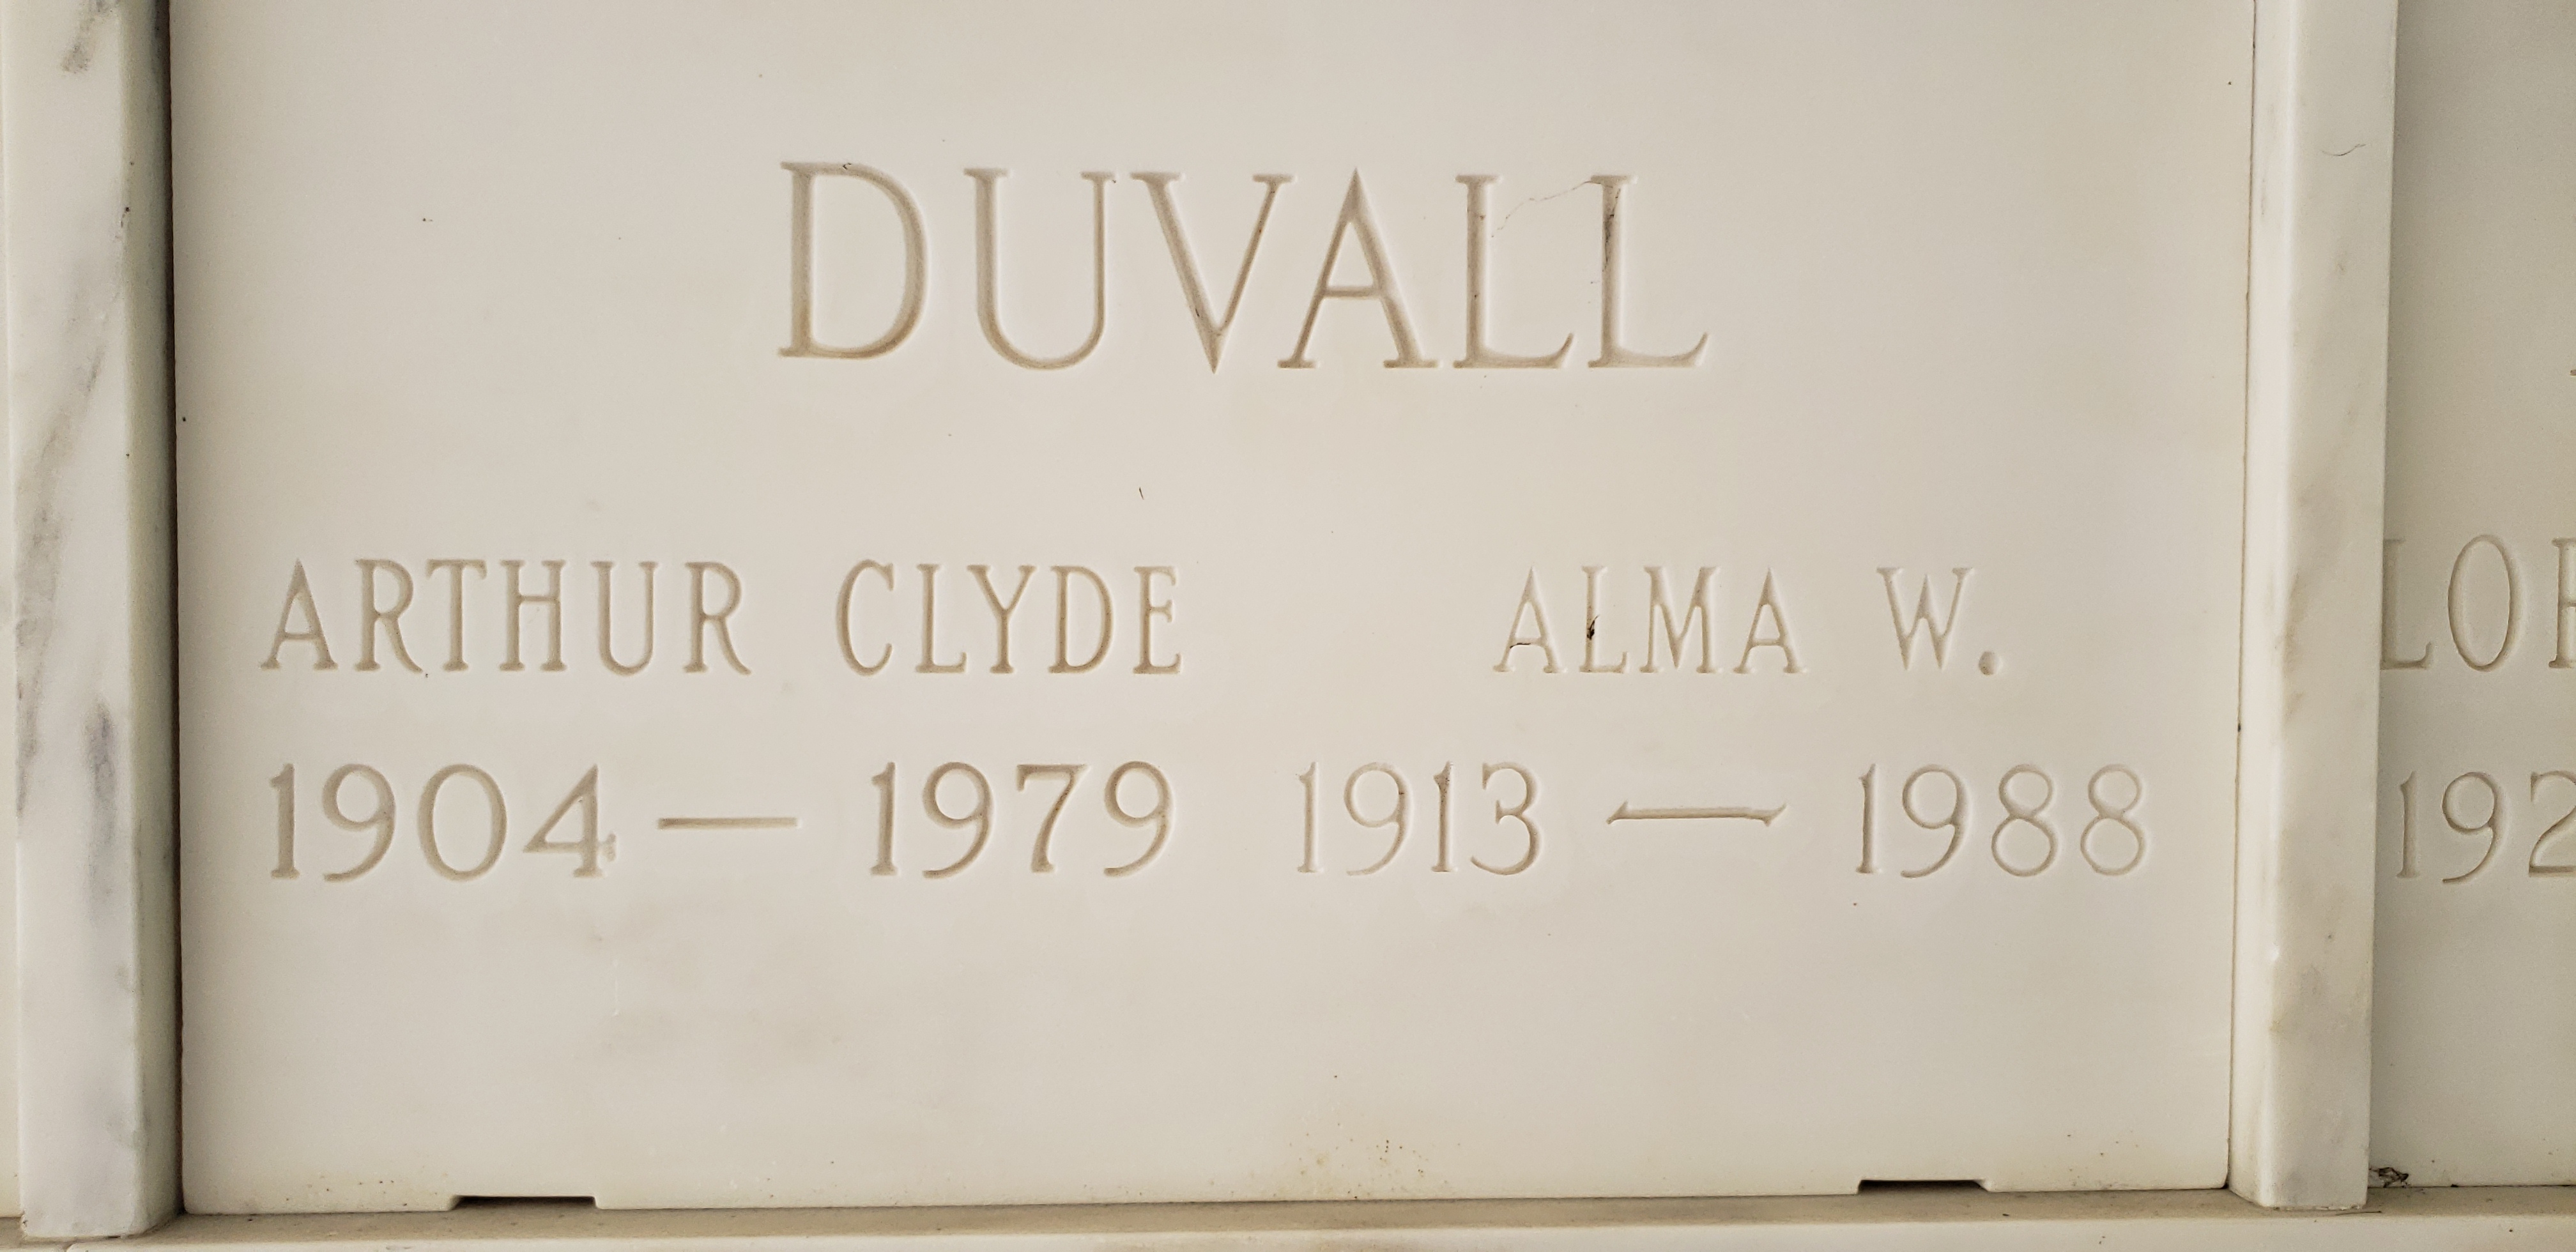 Arthur Clyde Duvall